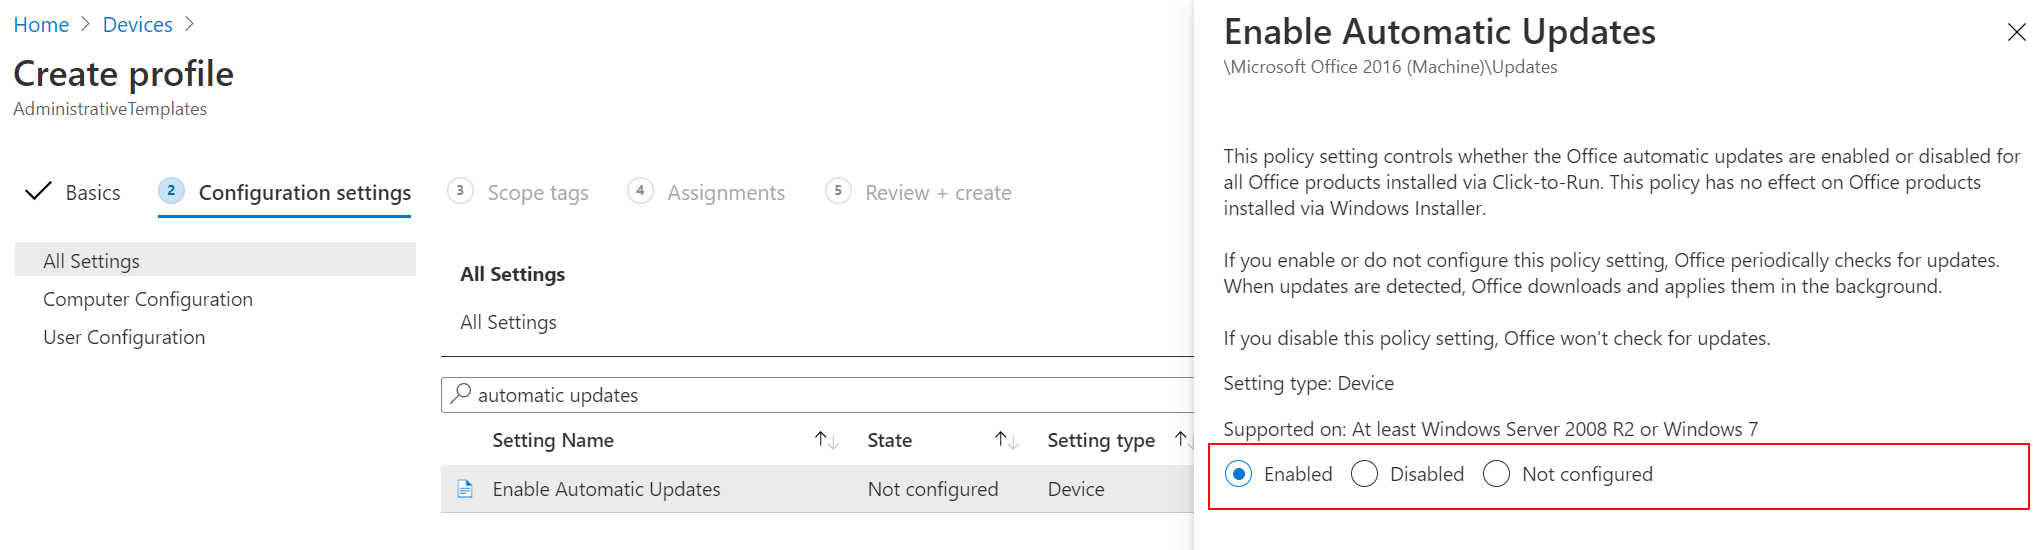 Snímek obrazovky znázorňující povolení automatických aktualizací Office pomocí šablony pro správu v Microsoft Intune